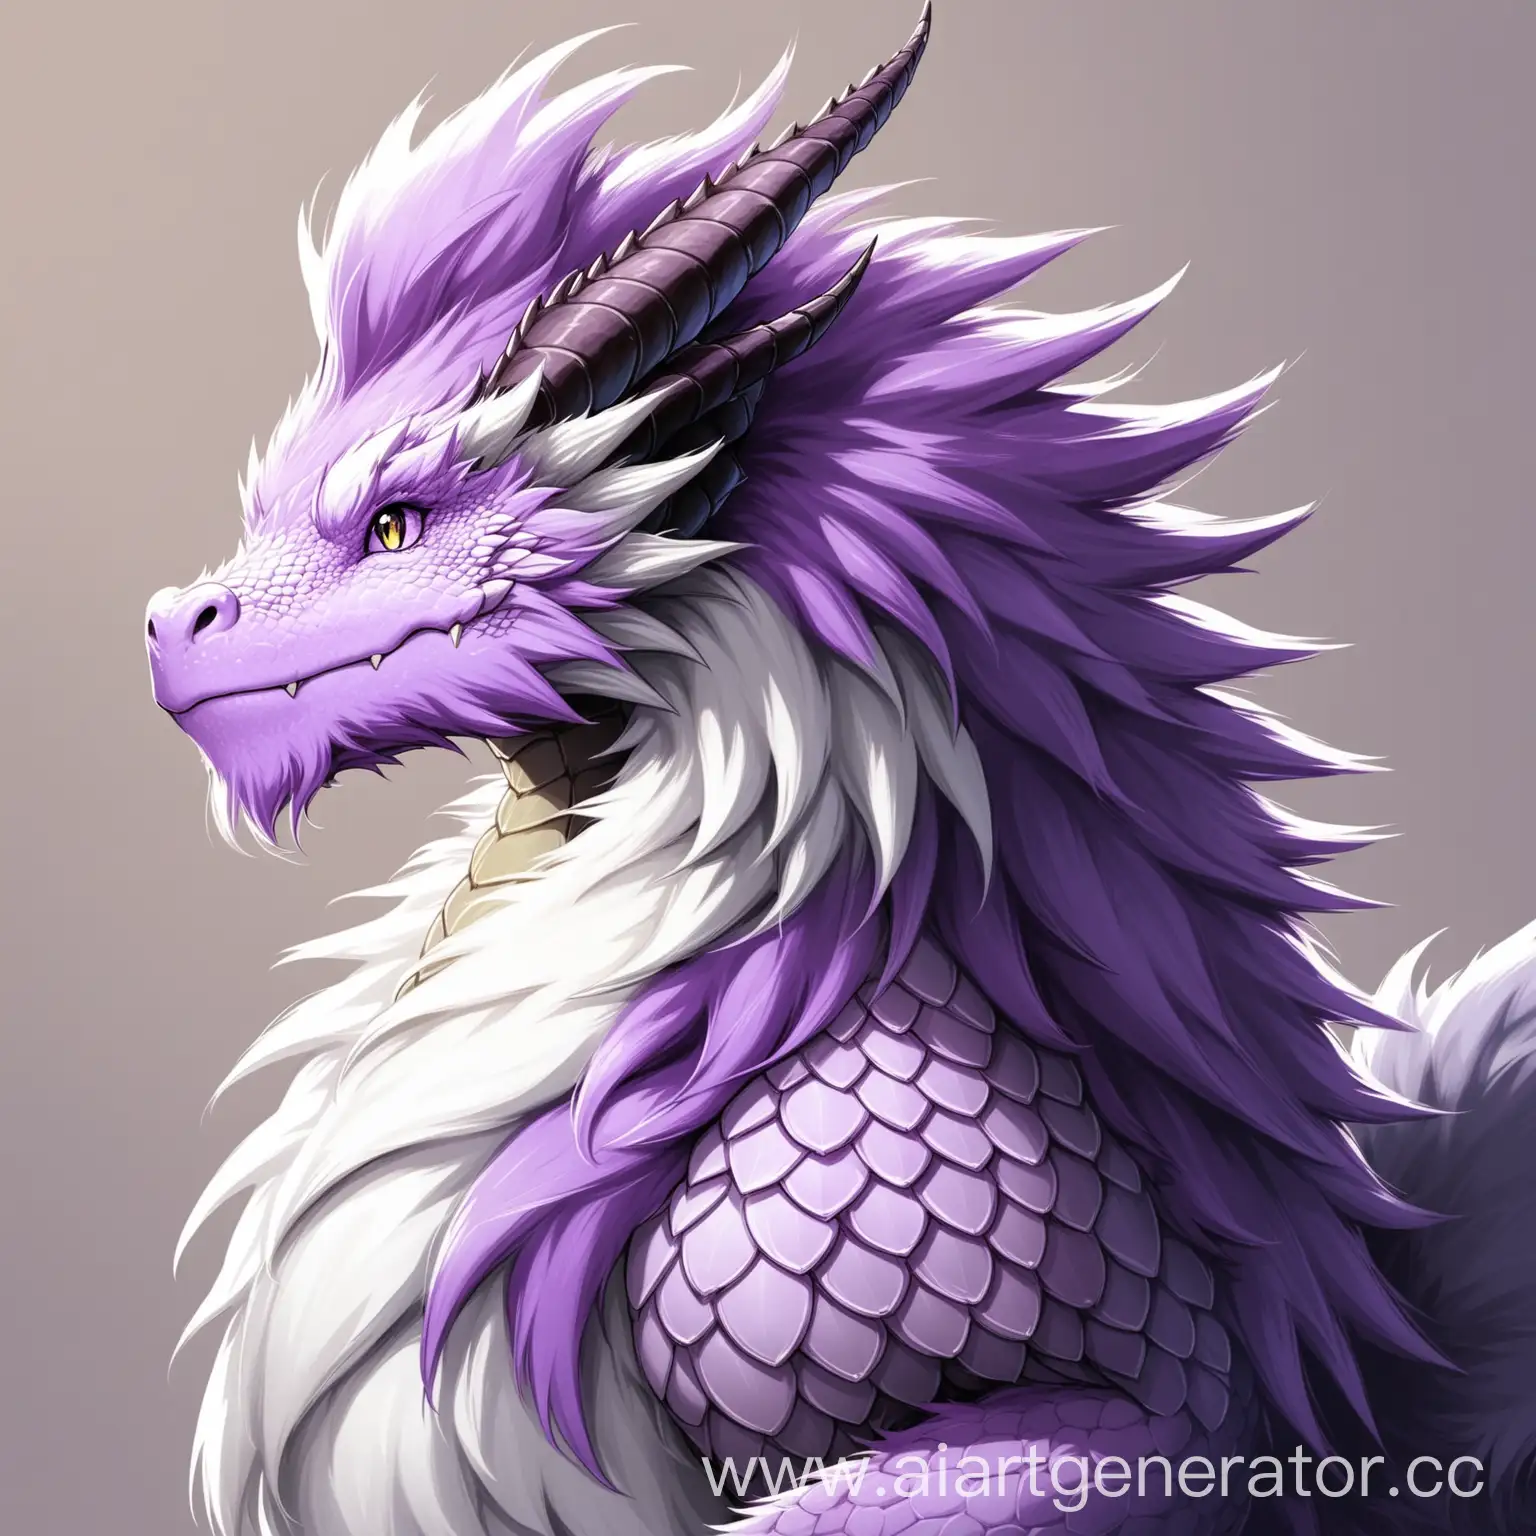 пушистый дракон, имеющий окрас меха Серо-Пурпурный  и белым торсом, и волосы Квифф с пурпурно-белым окрасом